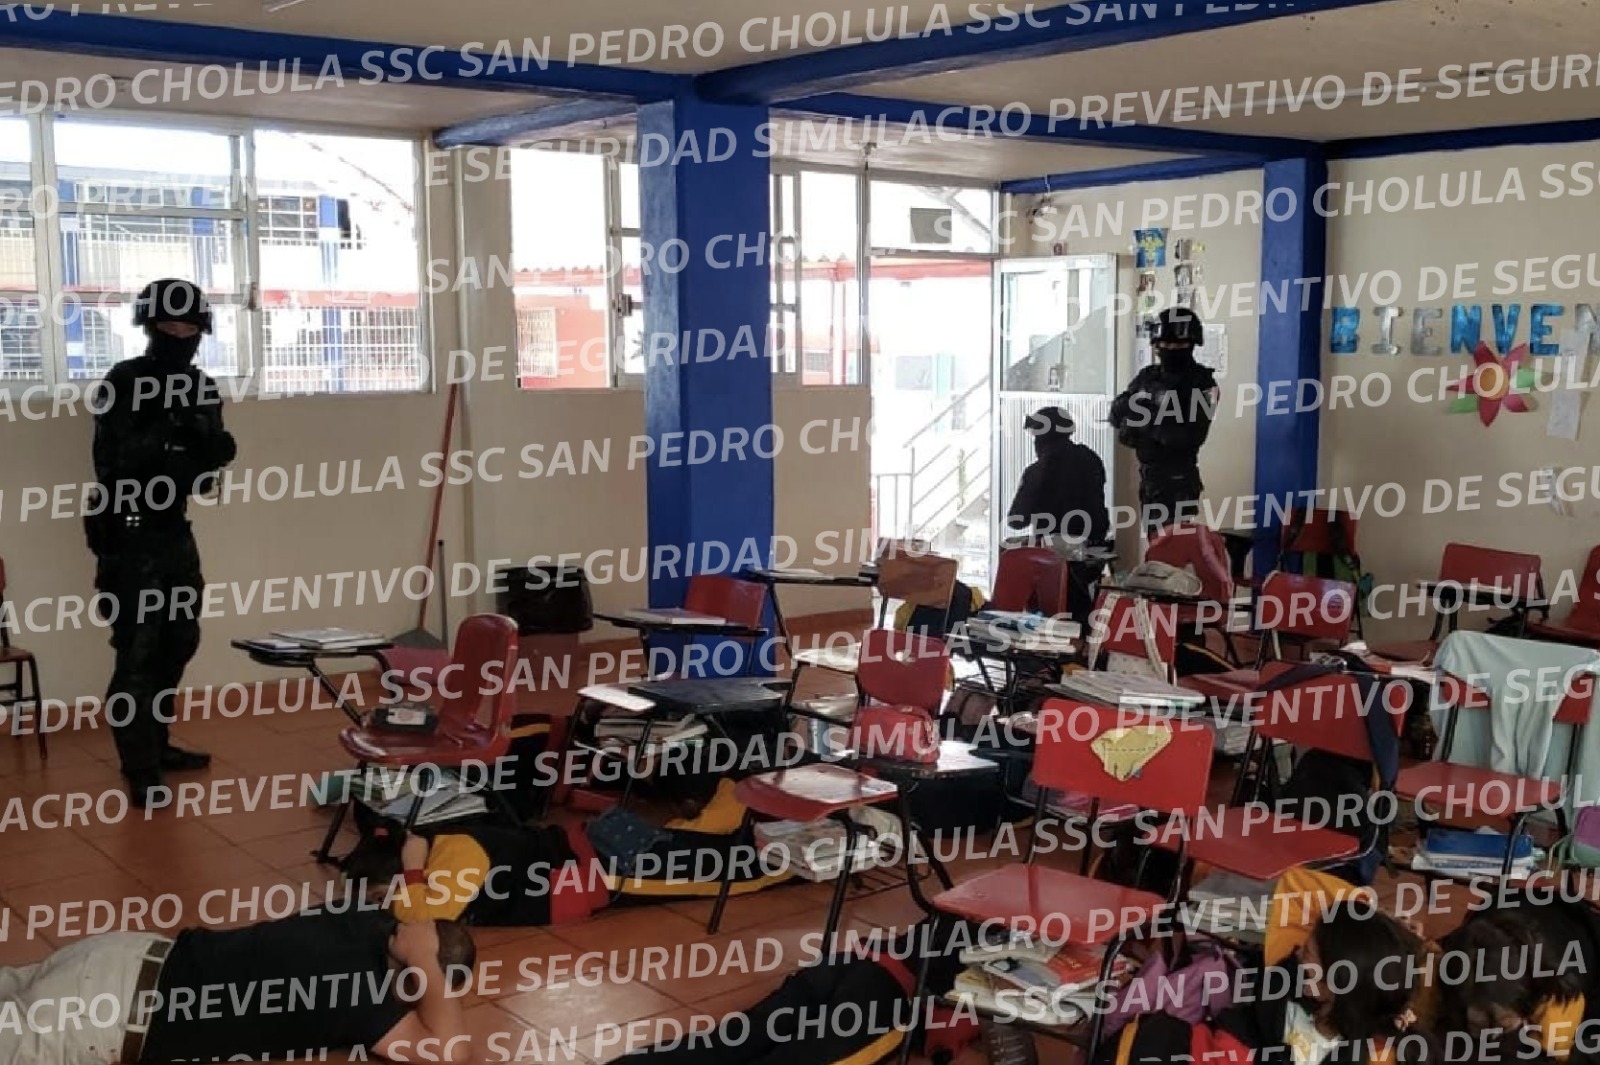 La Secretaría de Seguridad Ciudadana de San Pedro Cholula llevó a cabo un simulacro preventivo de seguridad en el Instituto Vygotsky